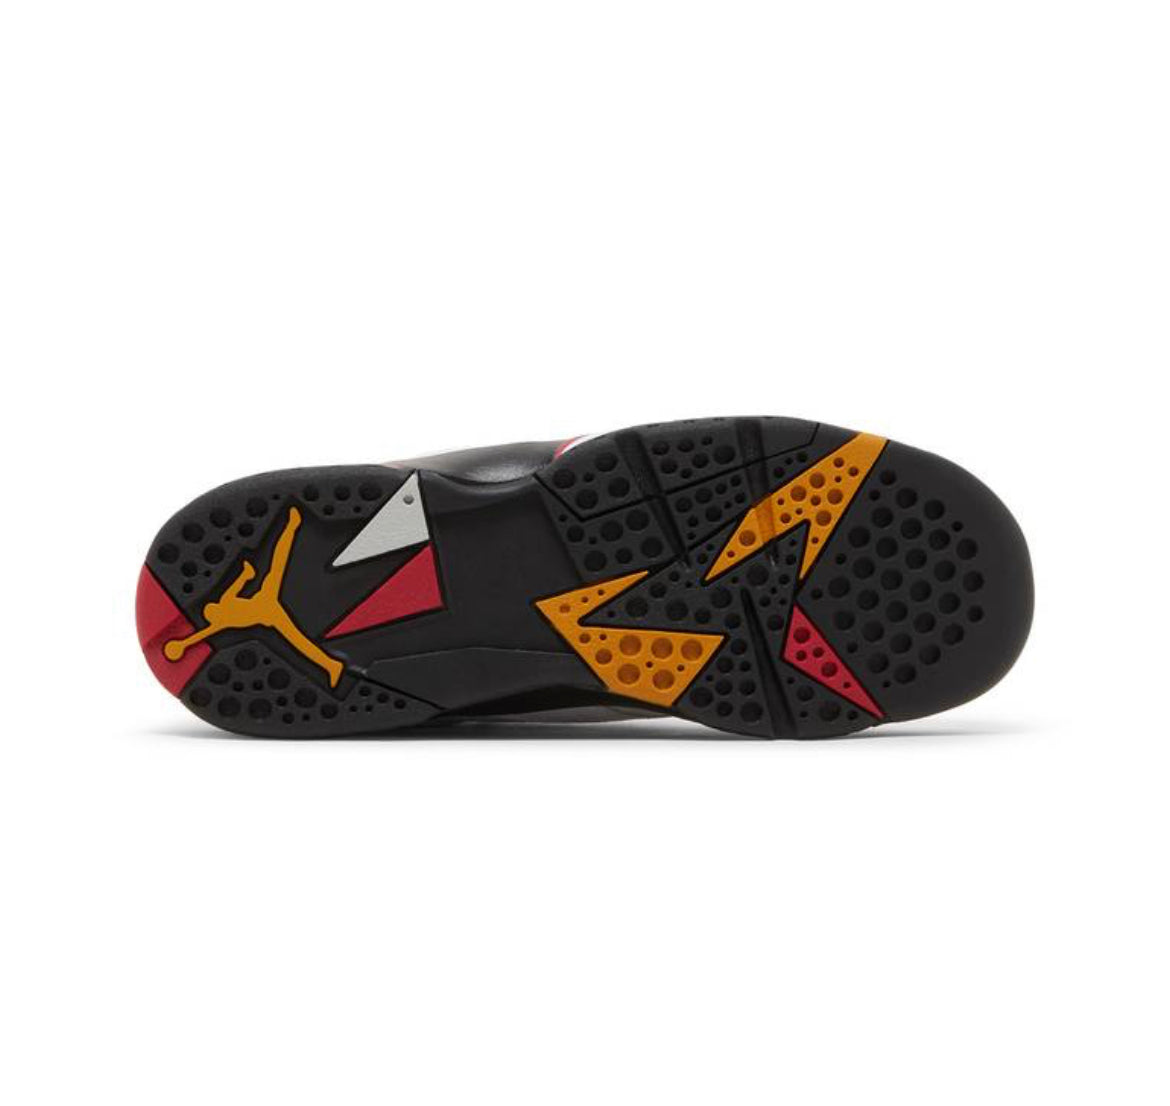 Jordan 7 Retro ‘Cardinal’ (GS) DQ6040-106